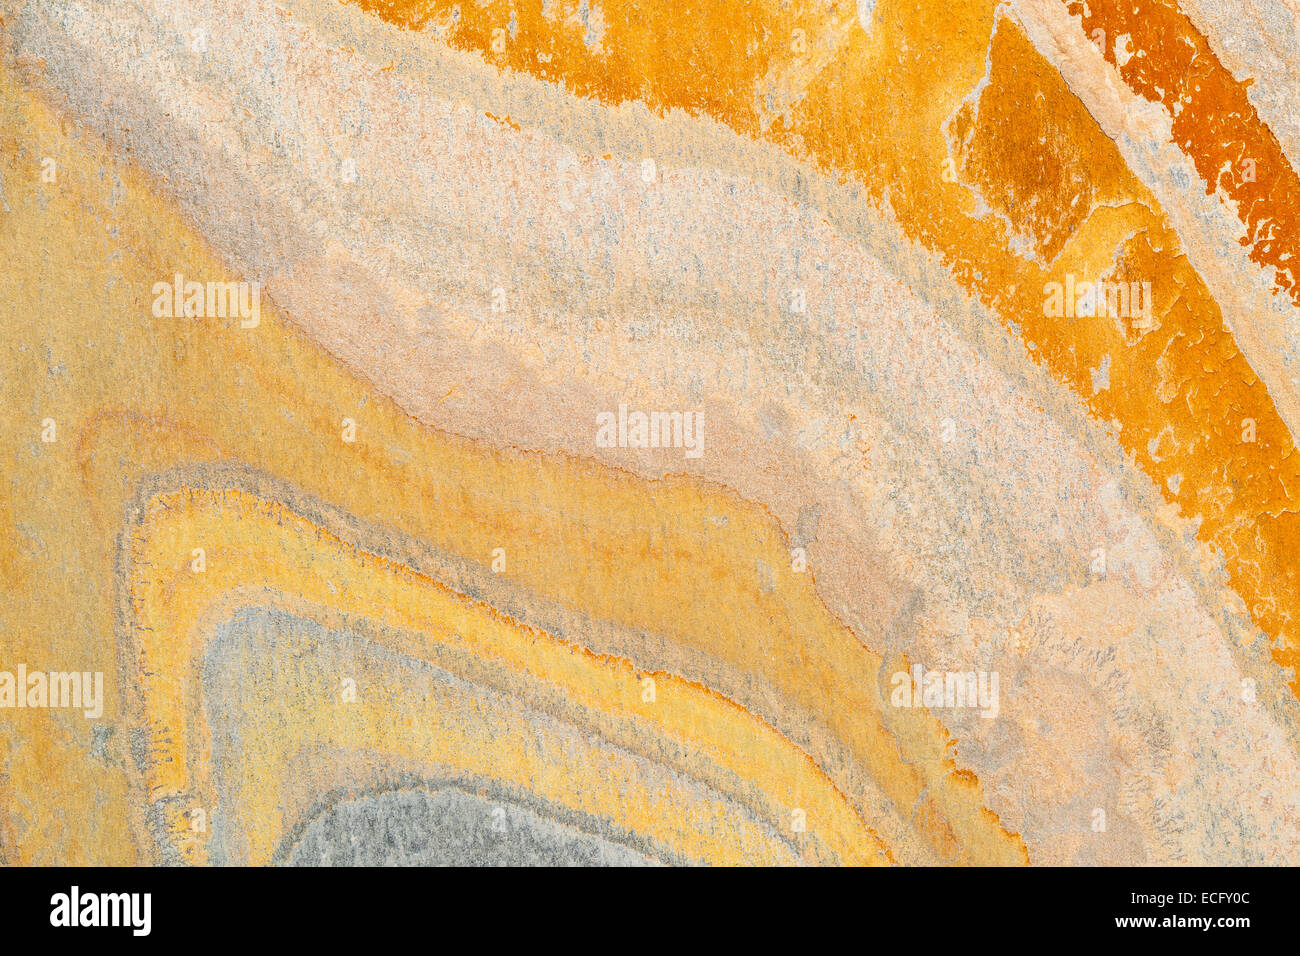 Plana, naranja, amarillo y azul piedra pizarra con patrón de onda abstracta Foto de stock